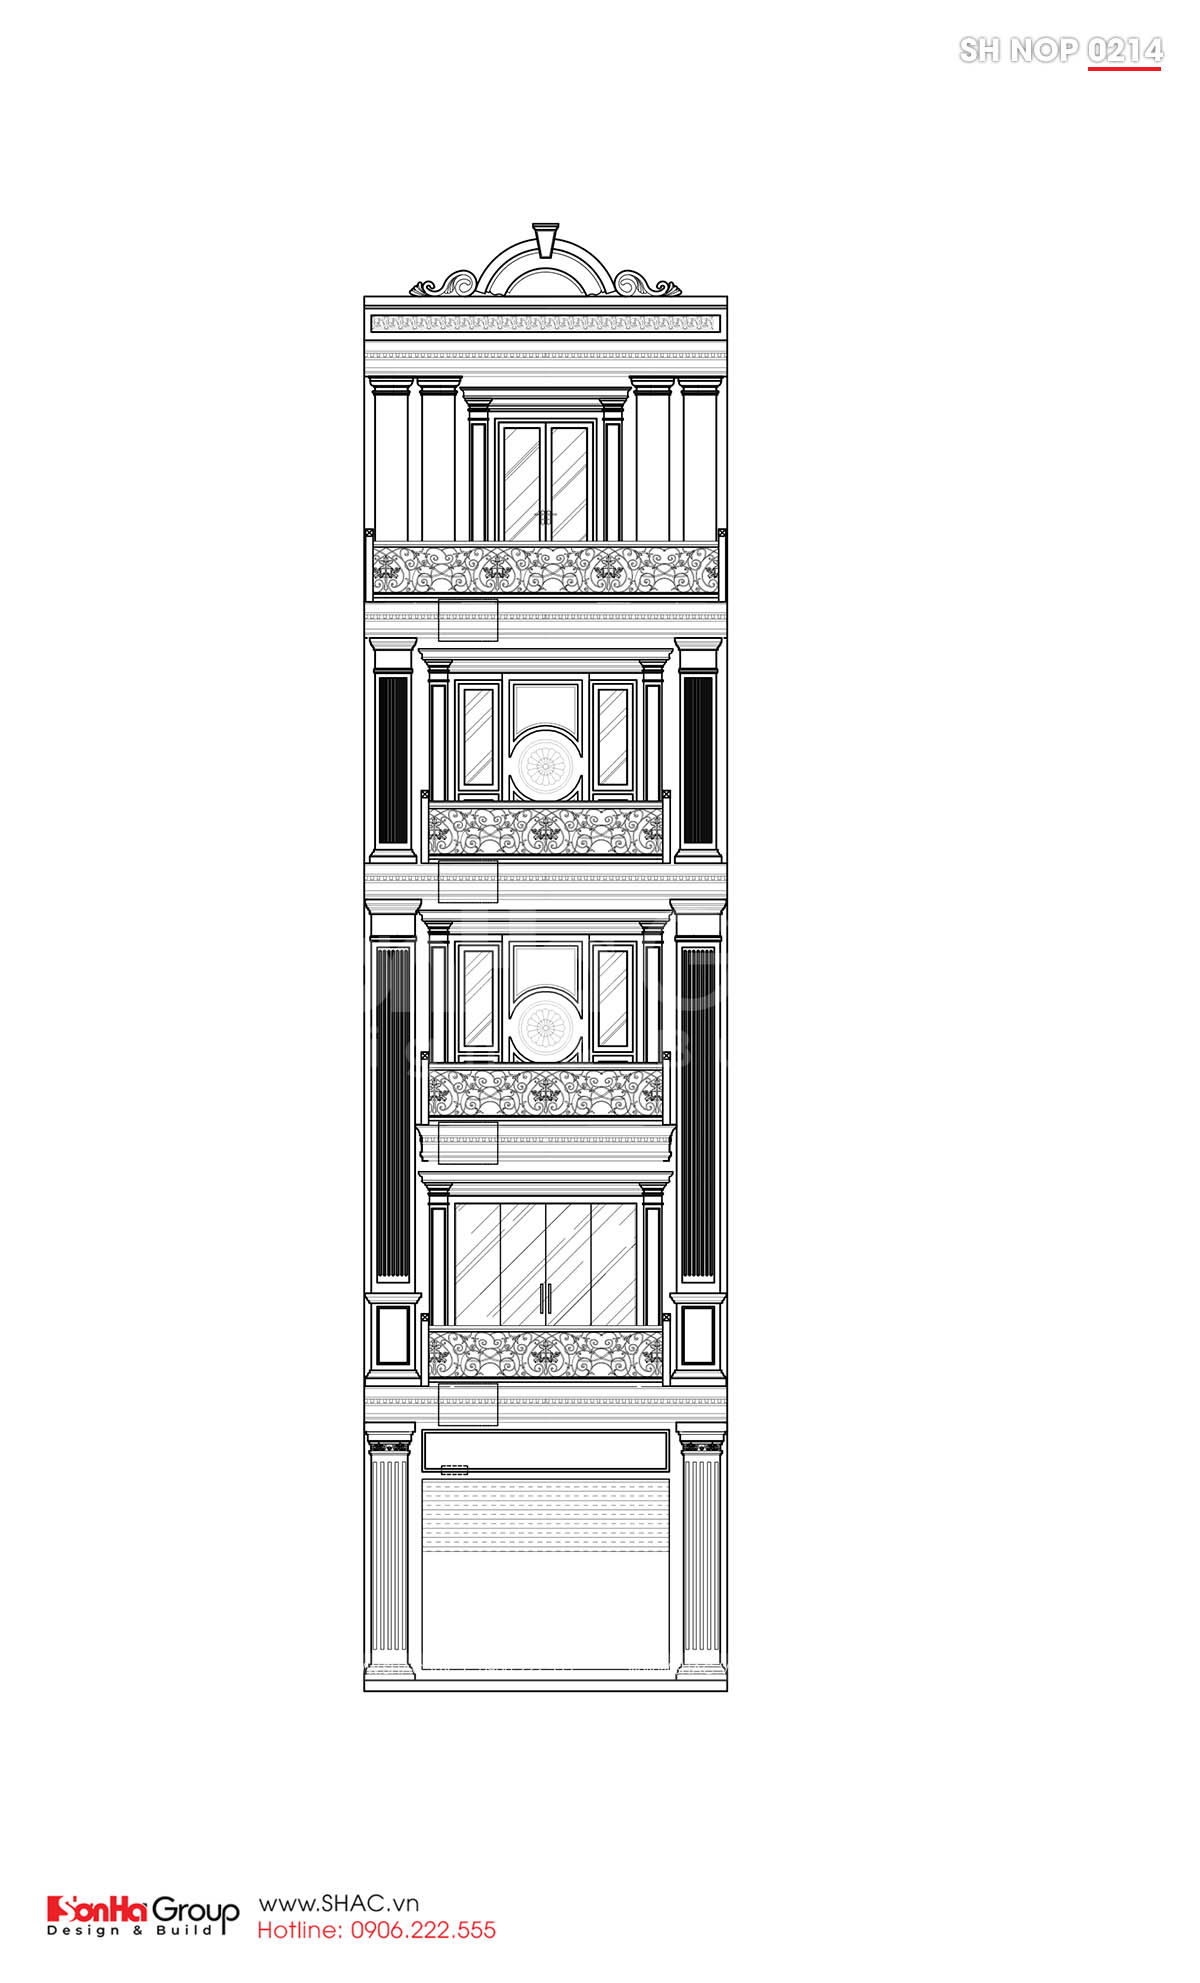 Mặt cắt trục BA thiết kế nhà ống tân cổ điển 5 tầng tại Lạng Sơn 